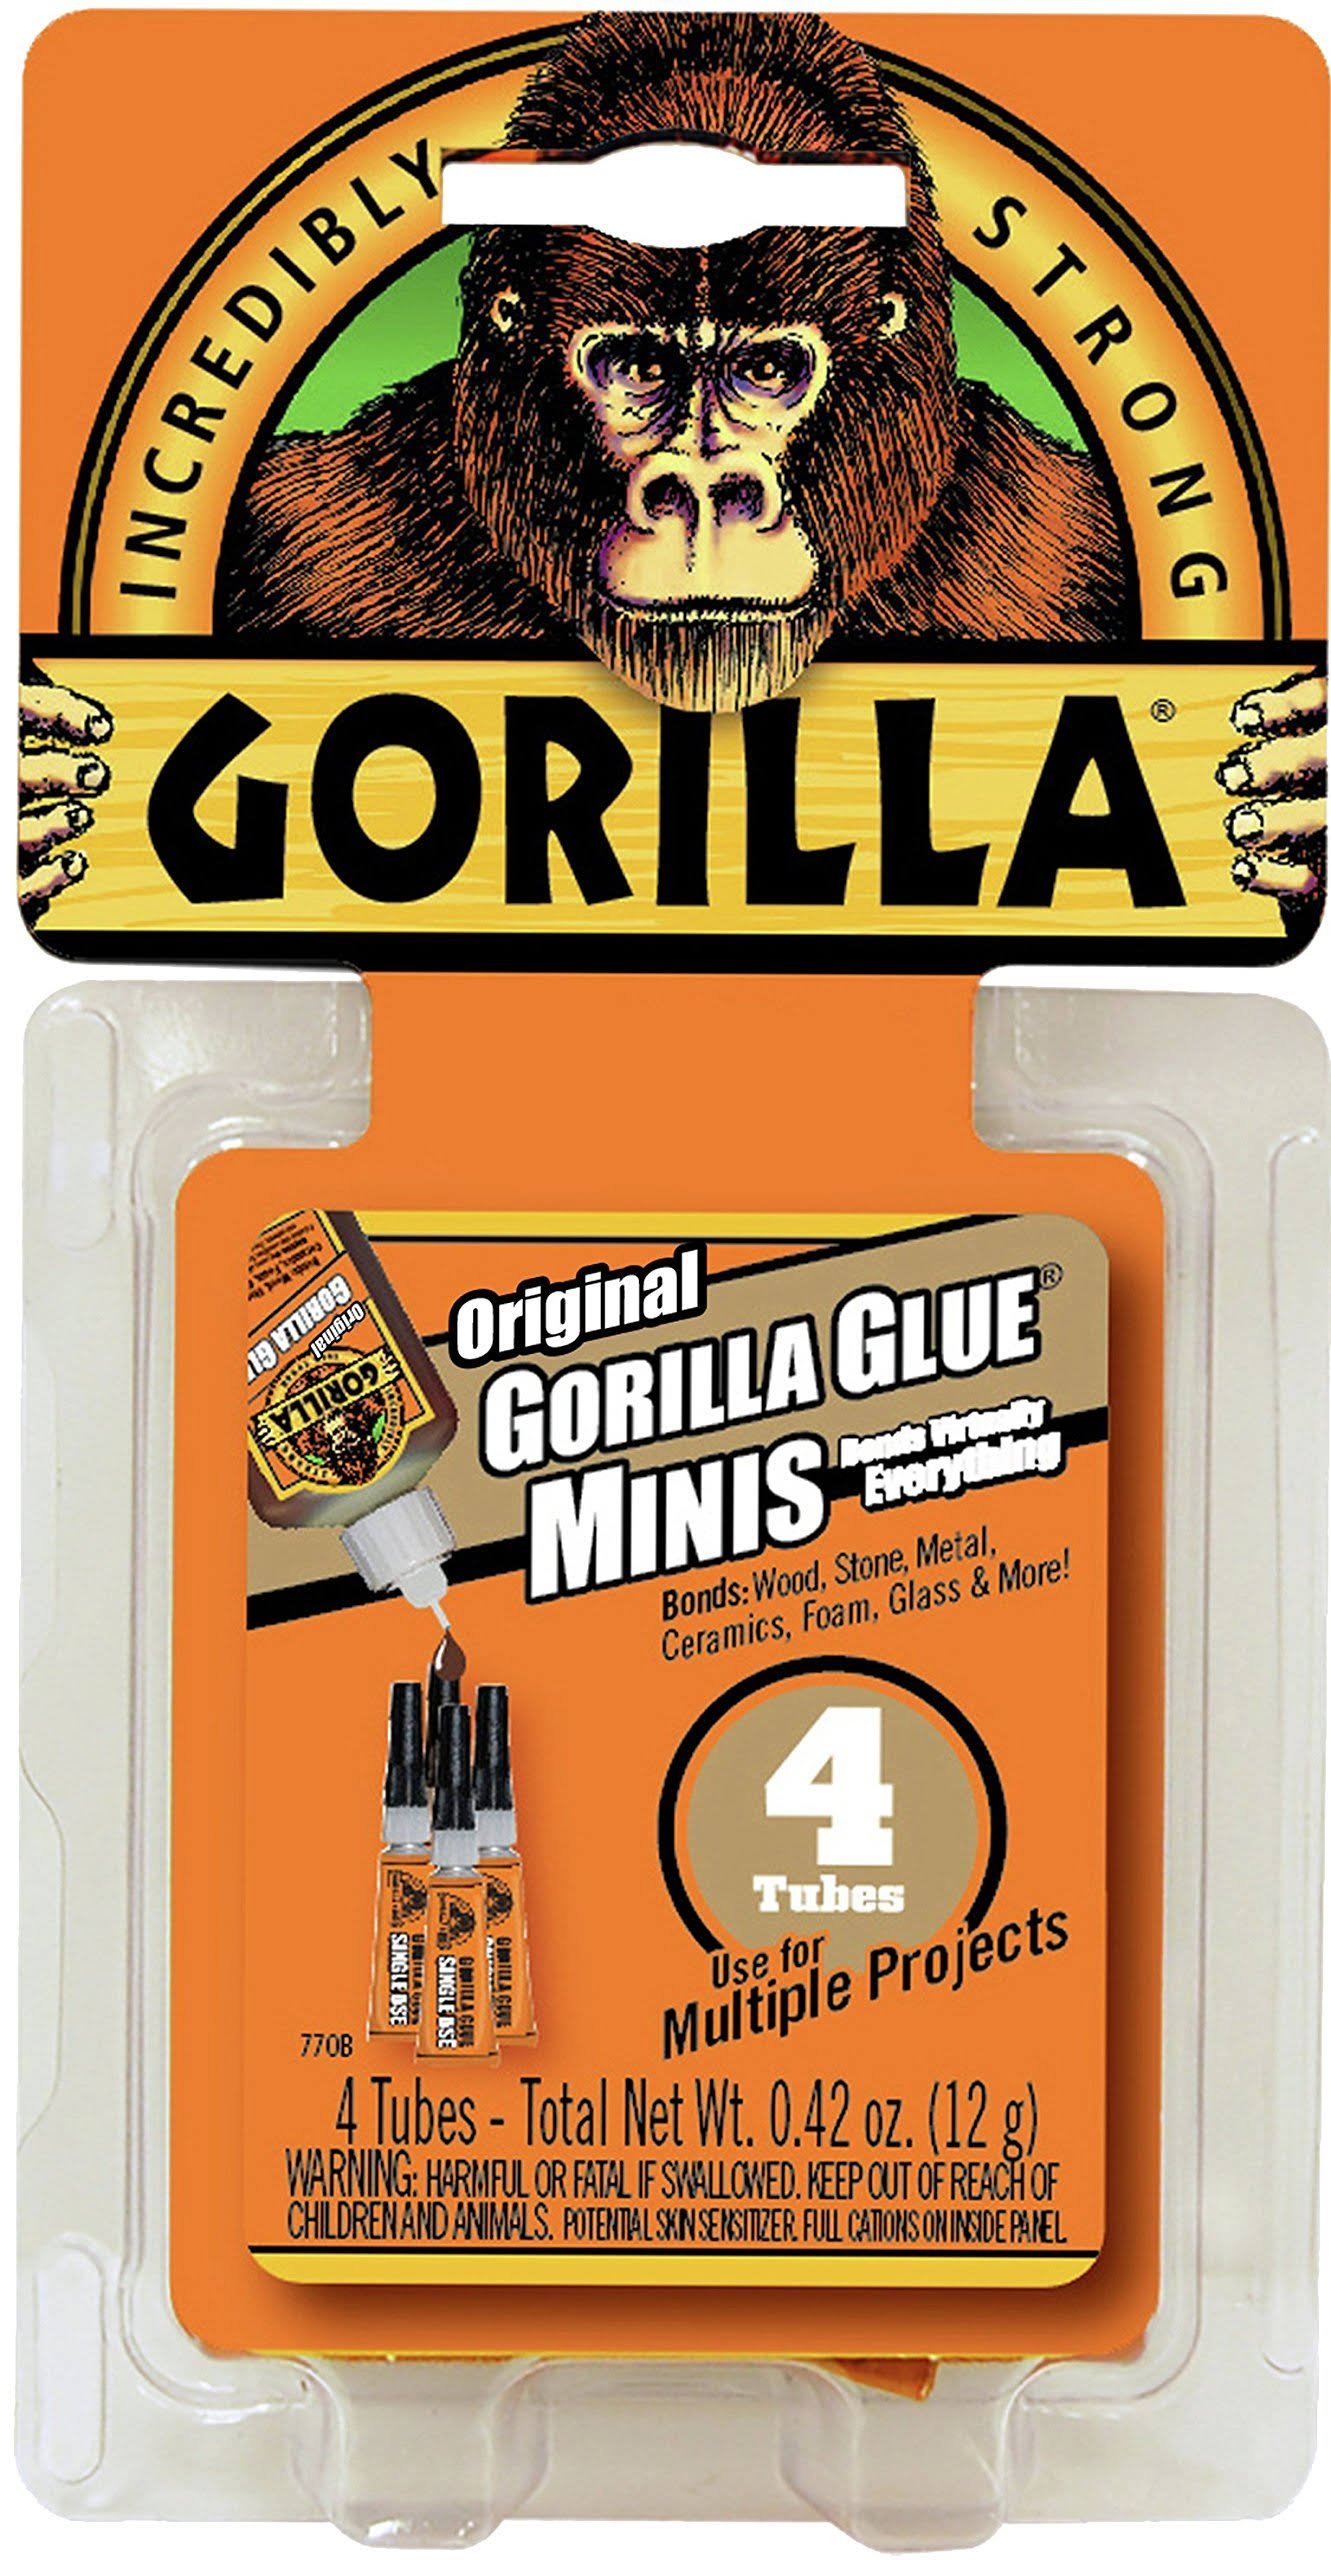 Gorilla Original Glue Minis